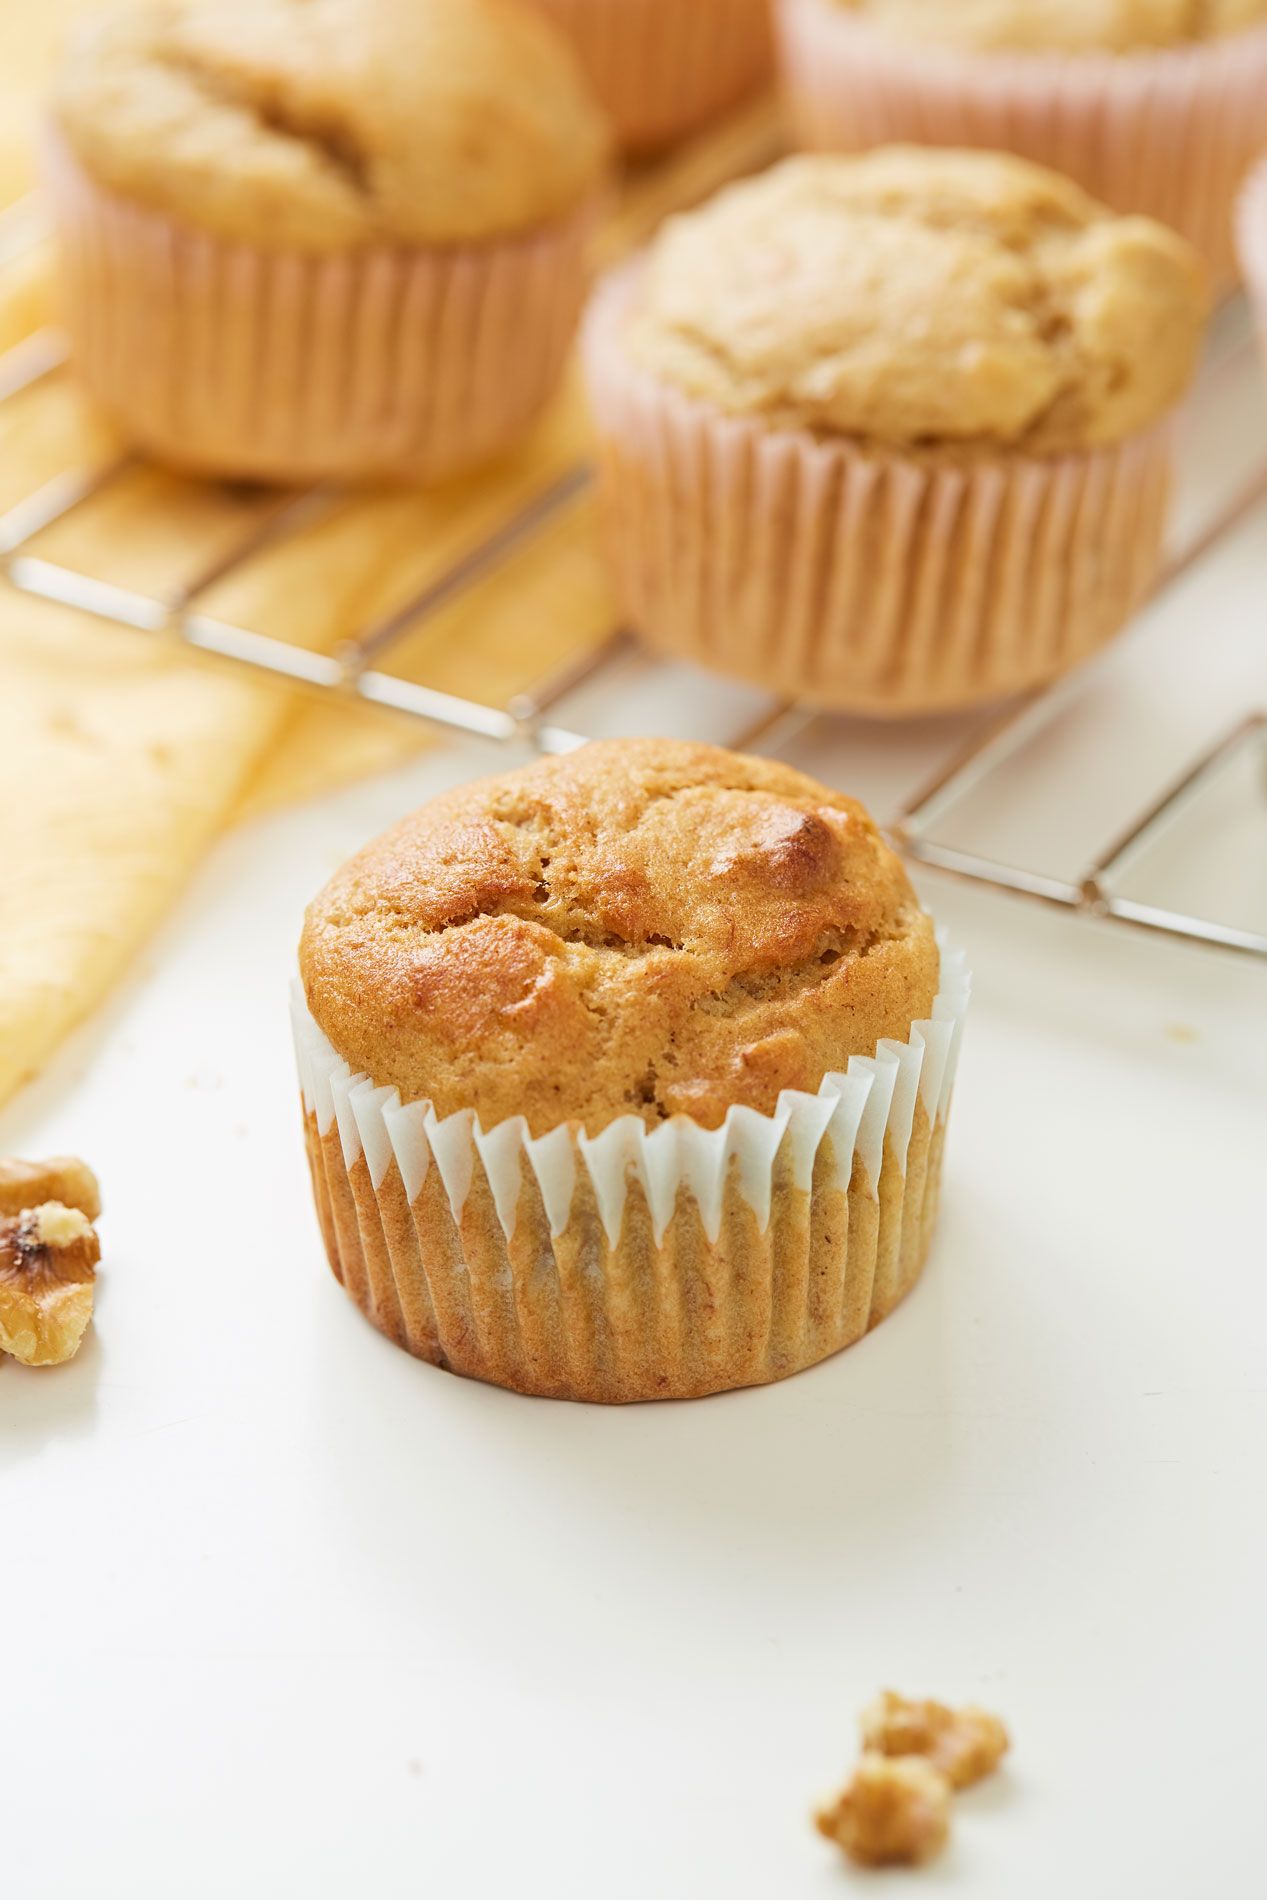 60 Best Muffin Recipes - Easy Muffin Recipe Ideas